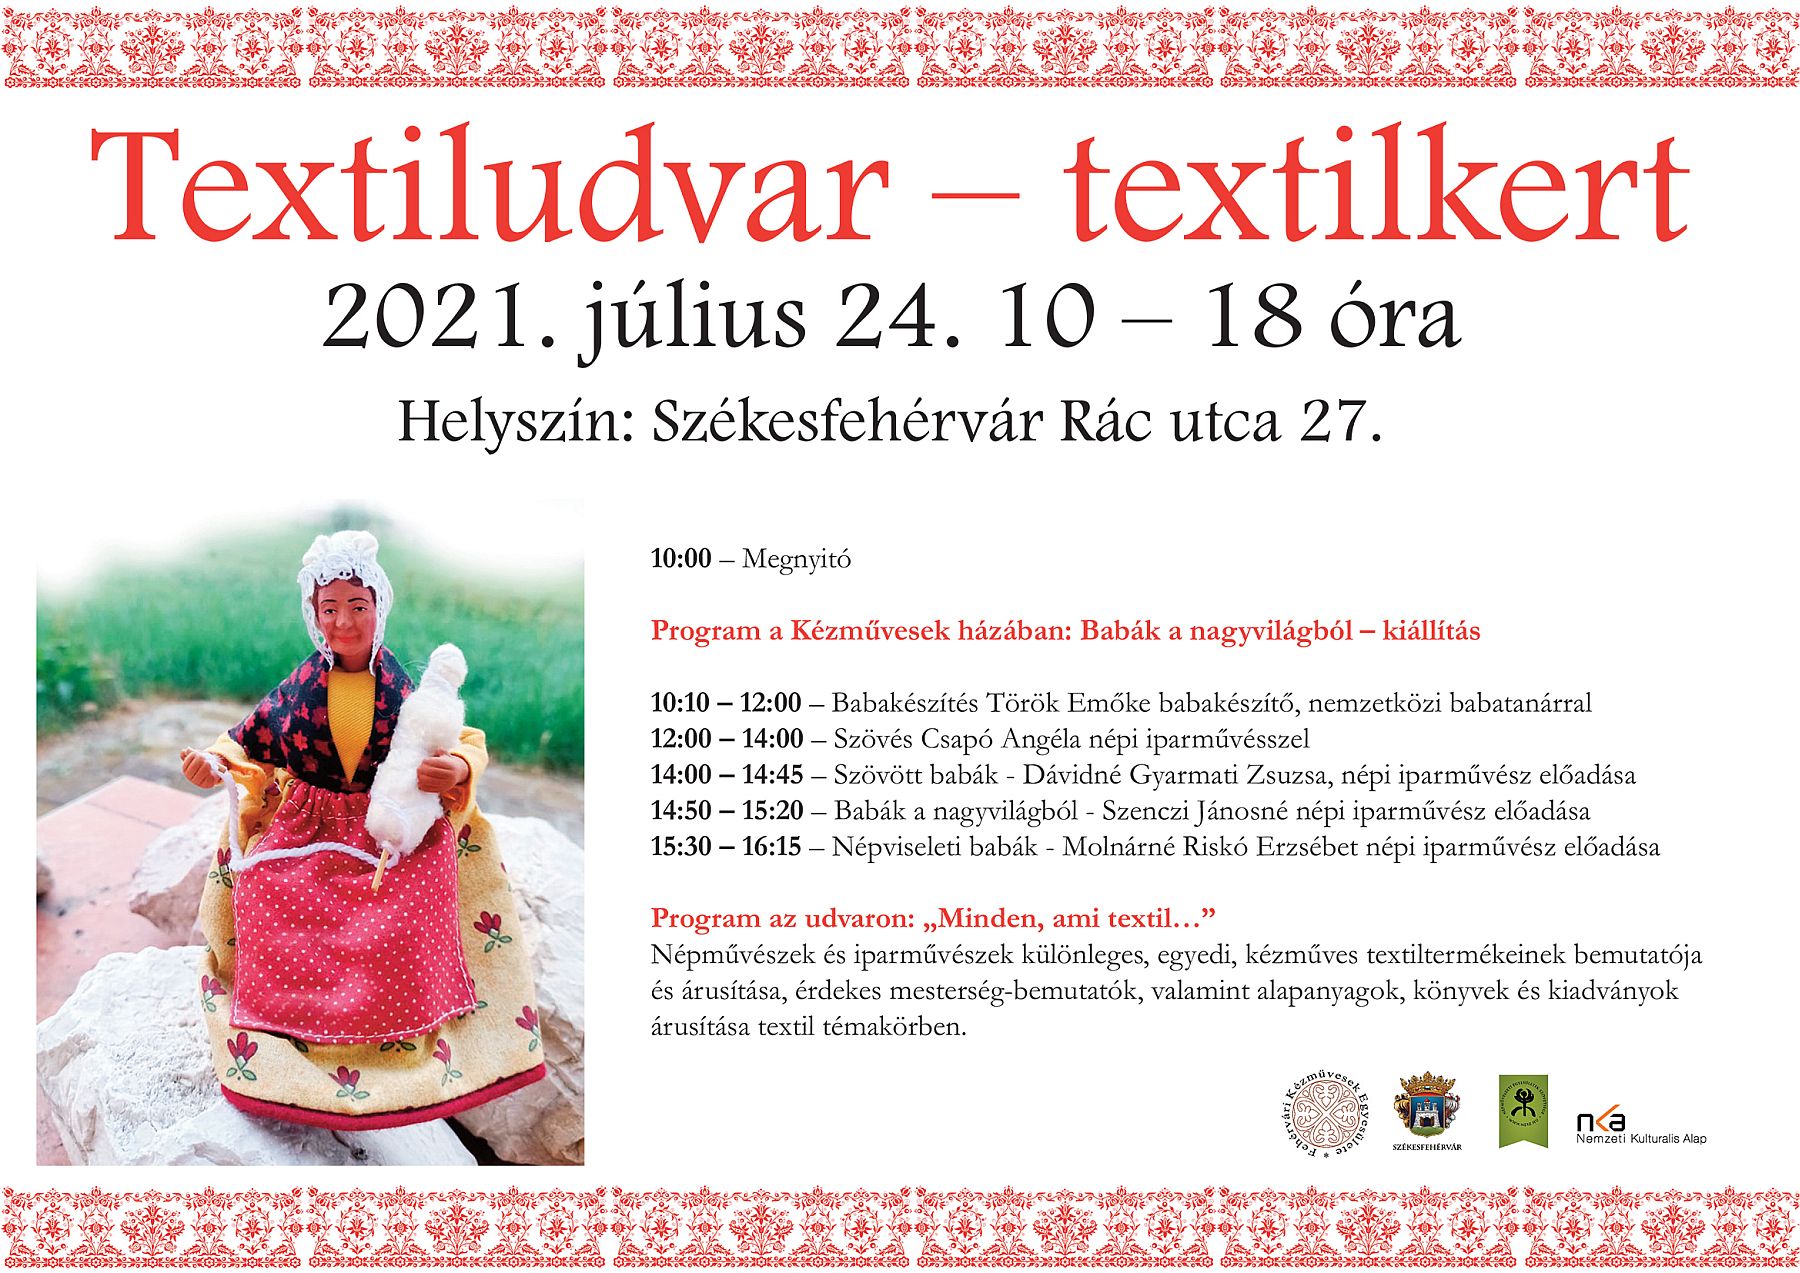 Textiludvar, textilkert – új programsorozat indul a Fehérvári Kézművesek Házában július 24-én